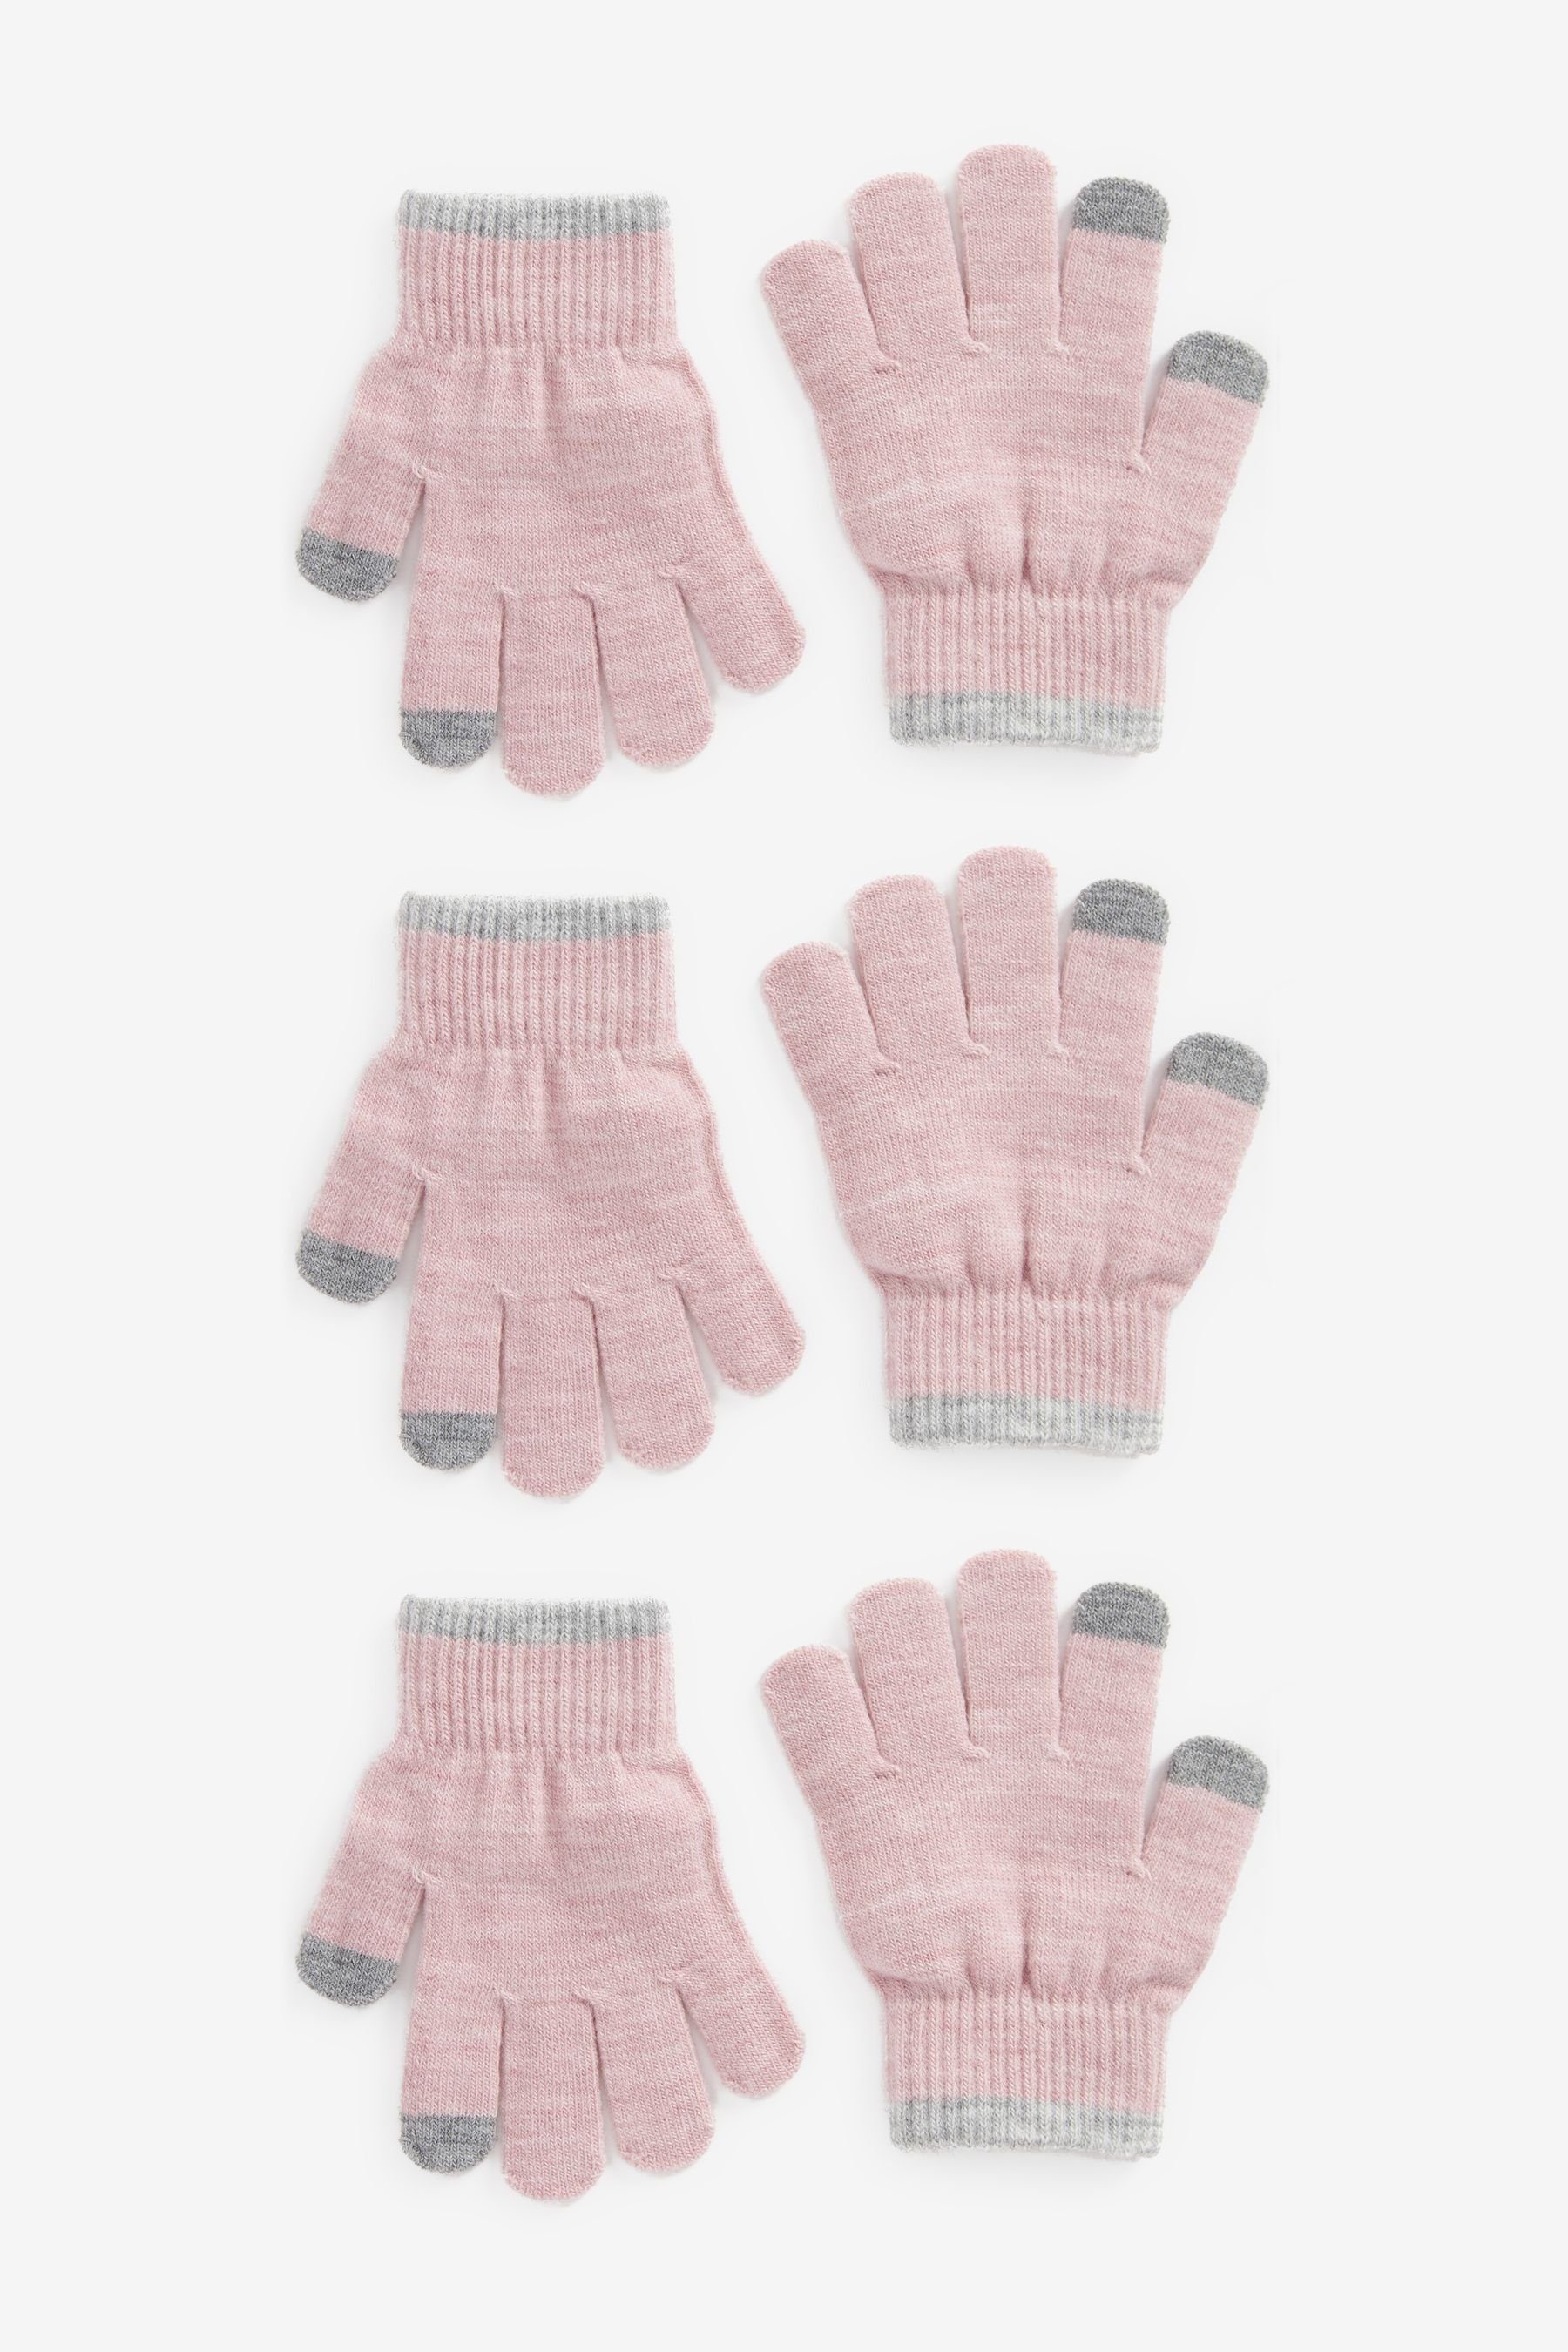 Next Strickhandschuhe 3er-Pack Pink Magic Touch-Tip-Handschuhe